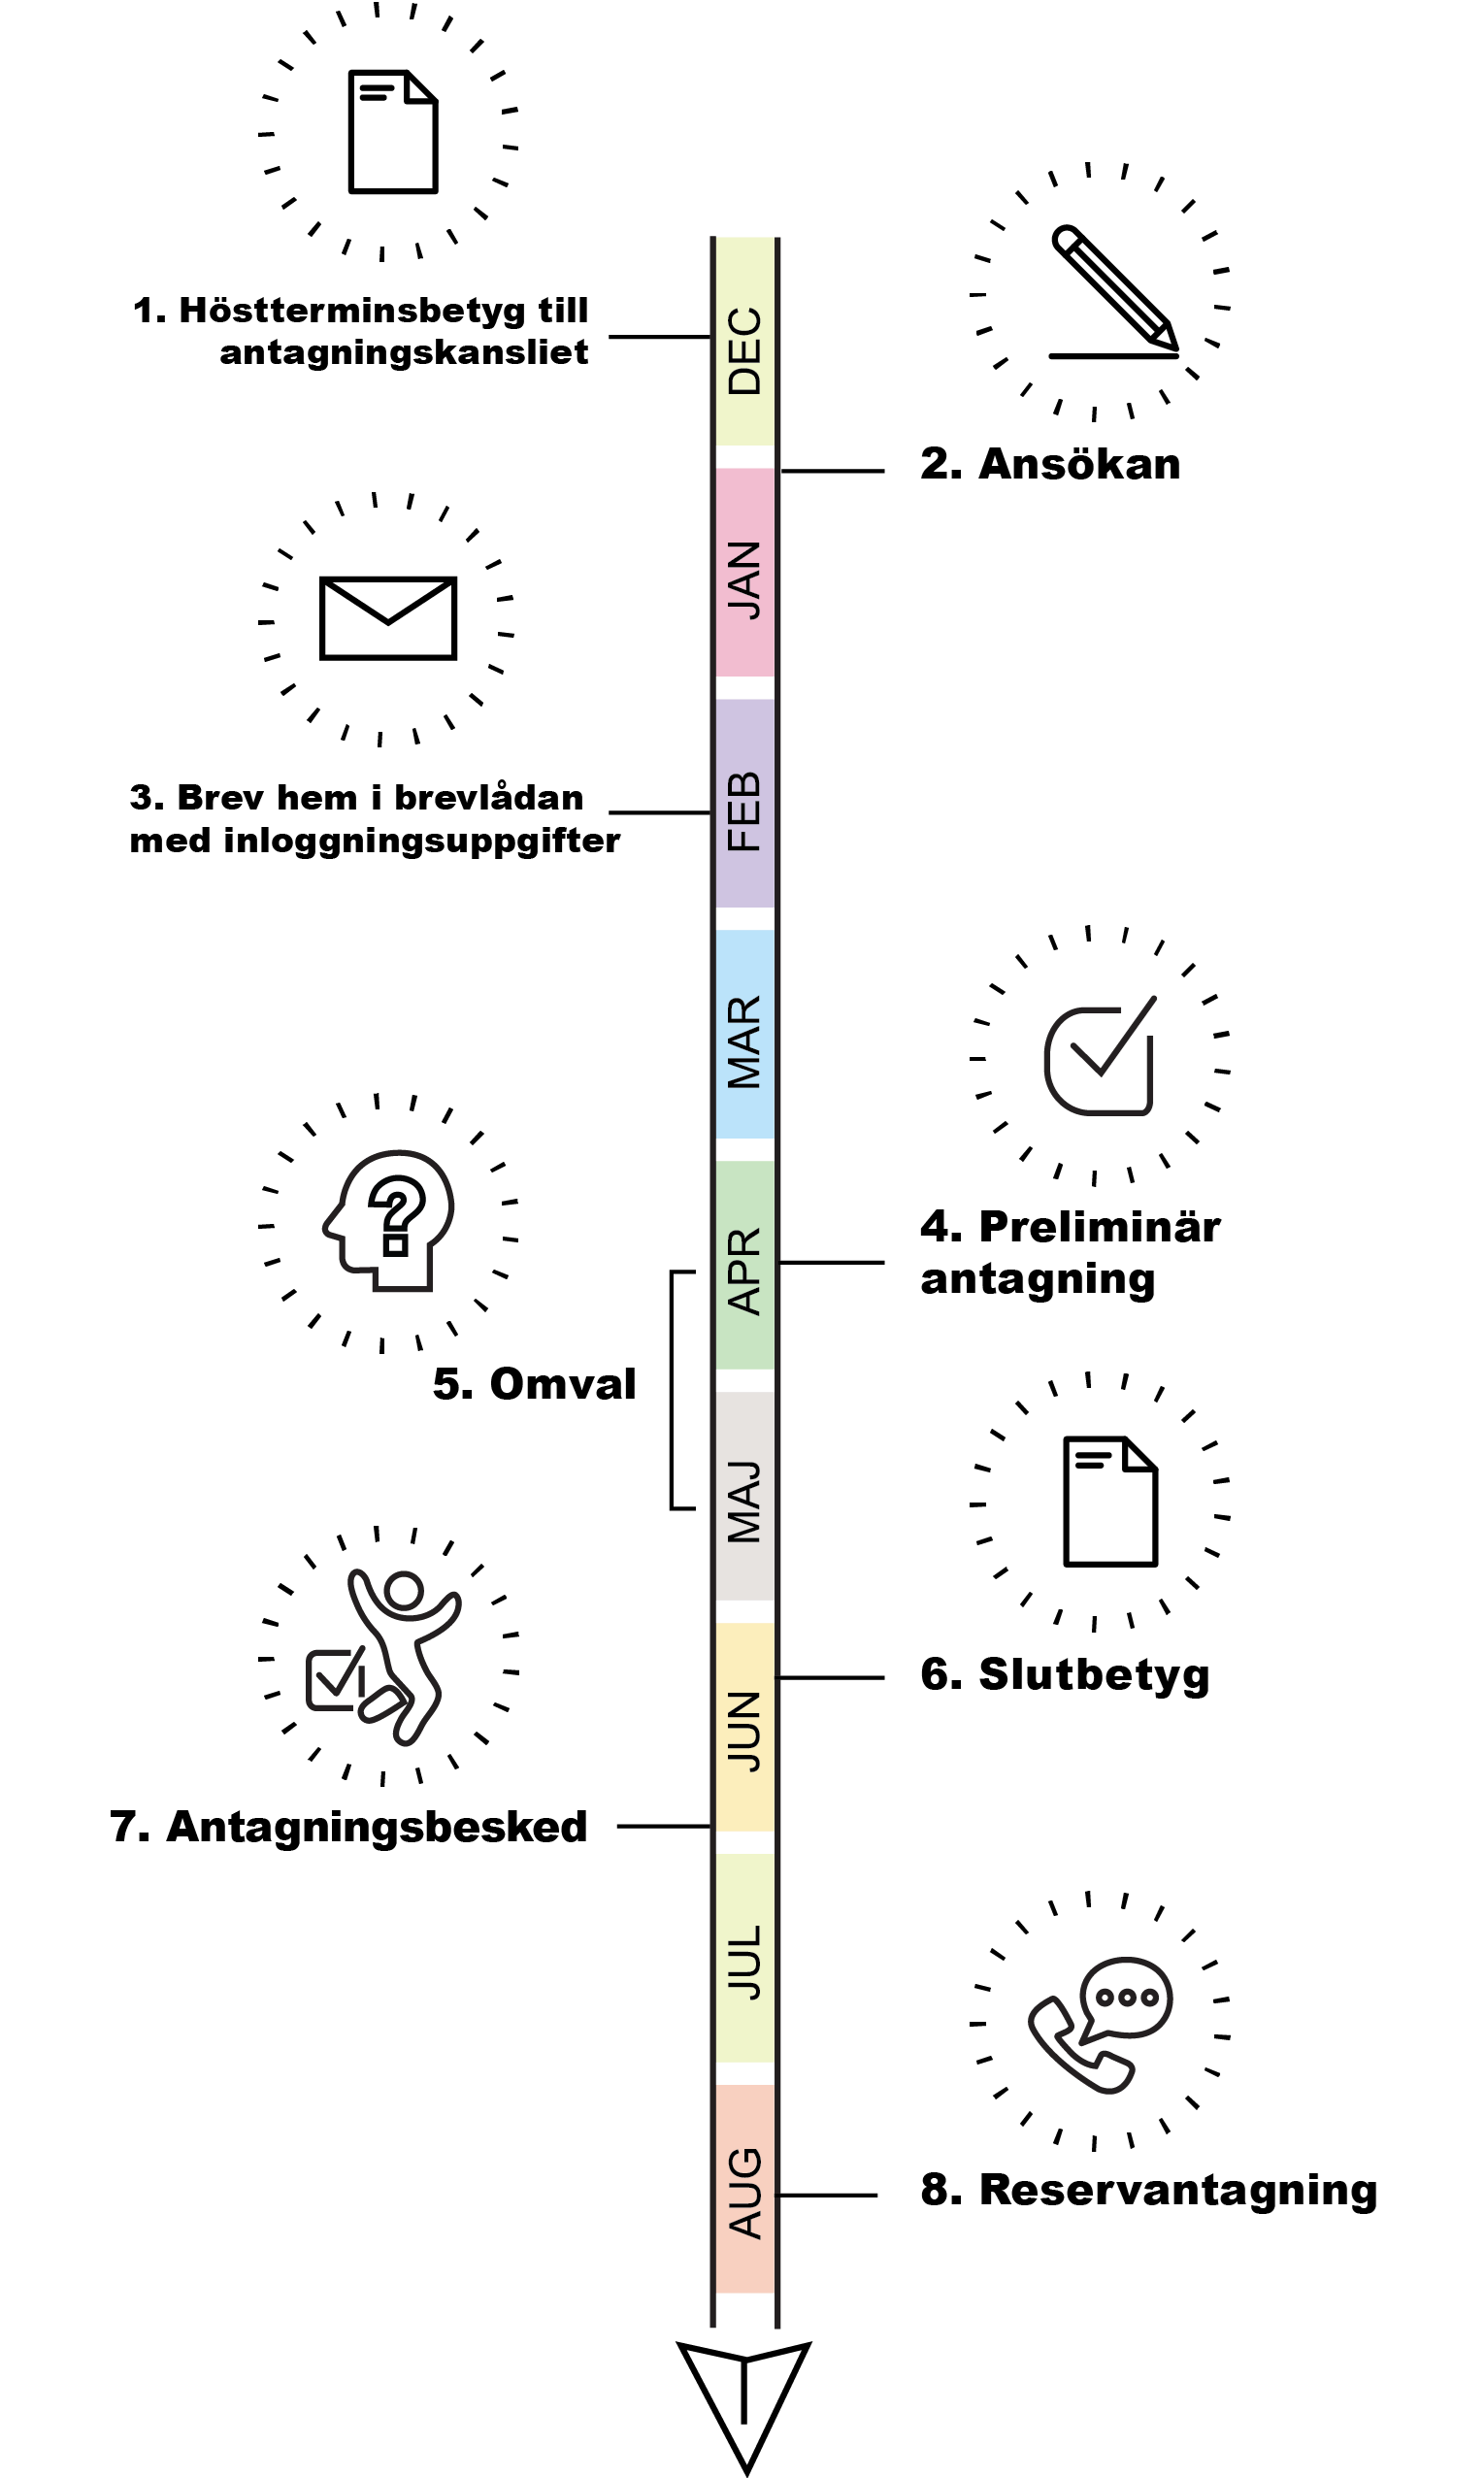 Illustration över antagninsprocessen